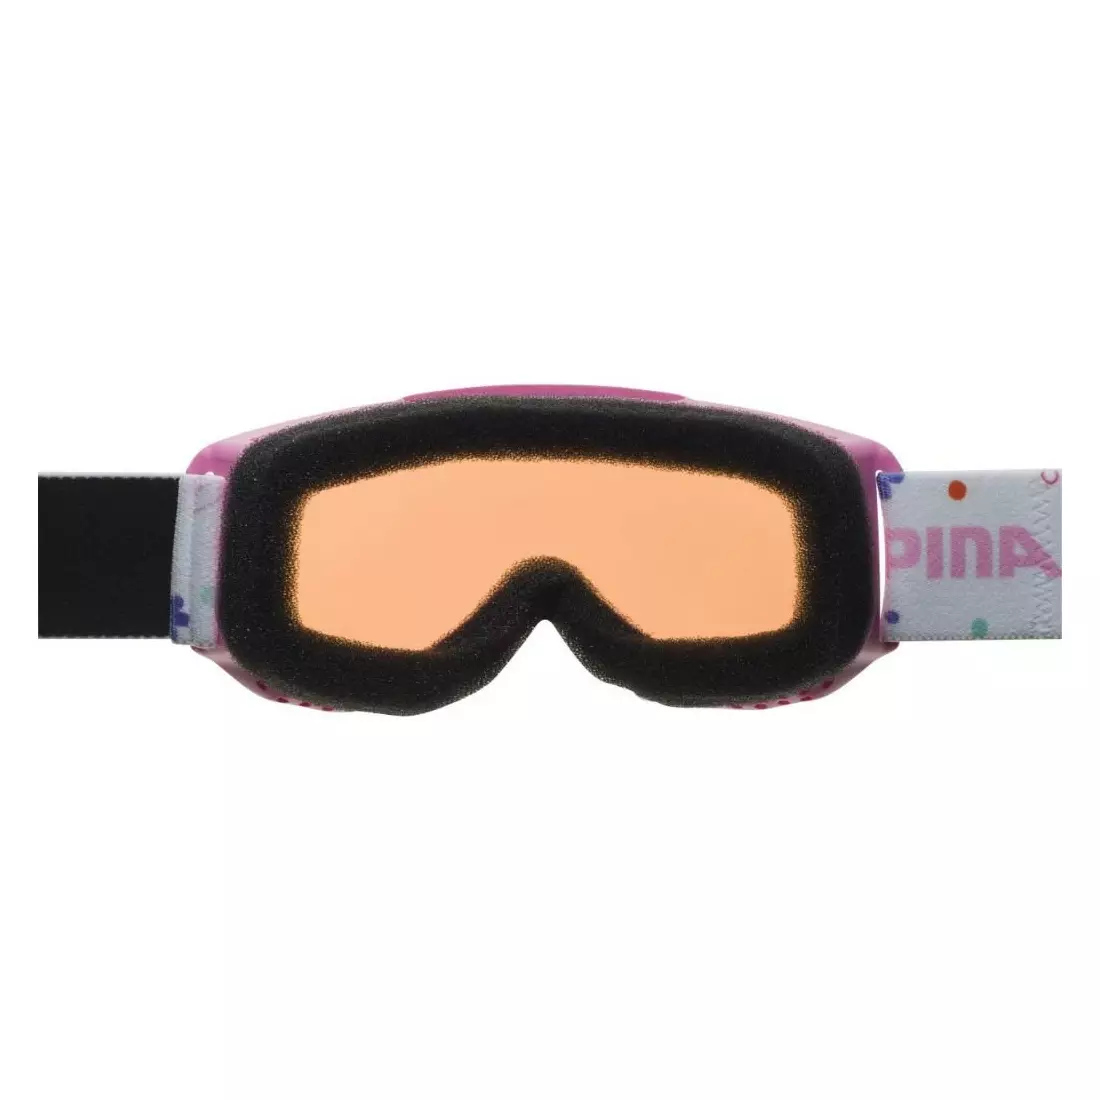 Lyžařské / snowboardové brýle ALPINA JUNIOR PINEY ROSE-ROSE A7268458